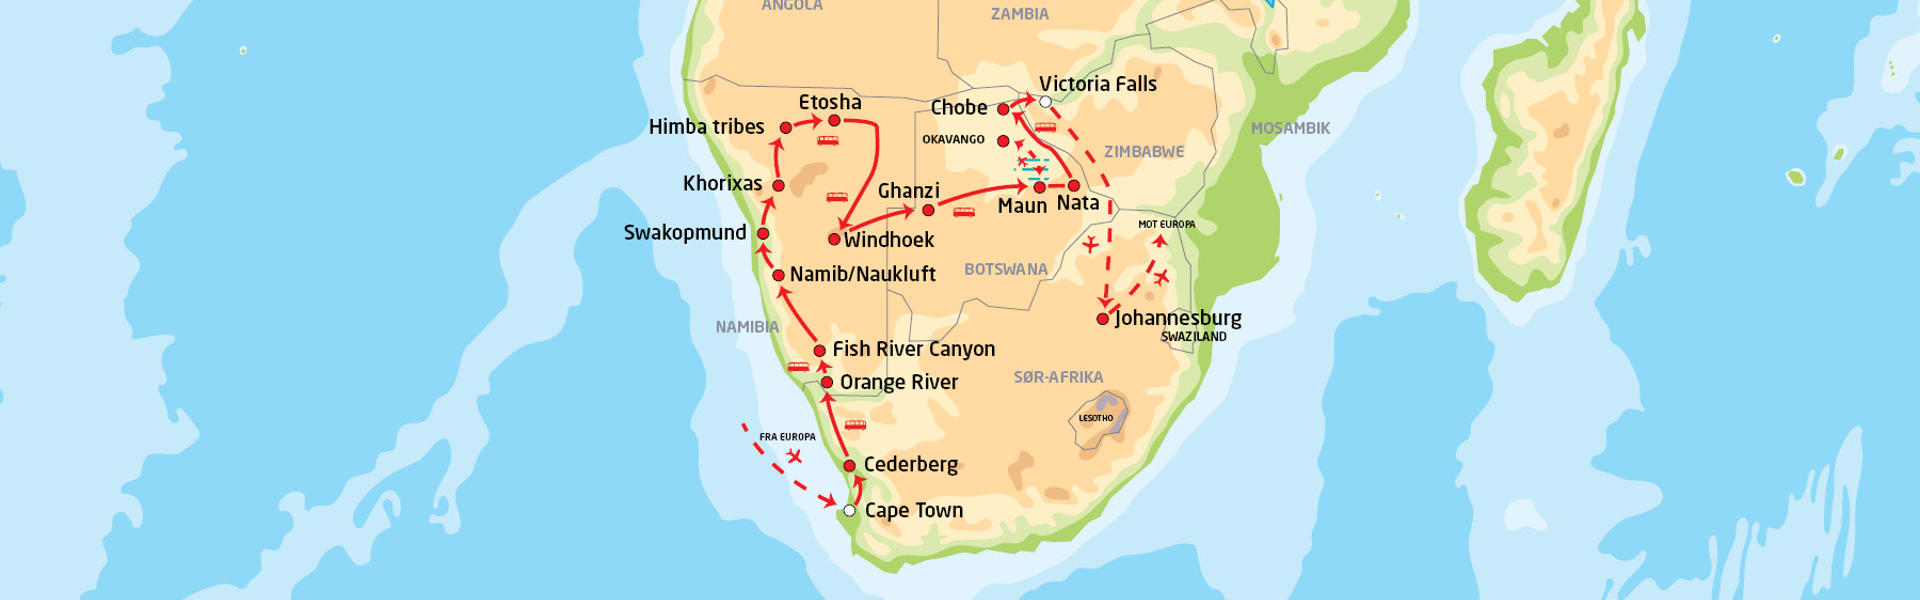 namibia-botswana-og-victoria-falls